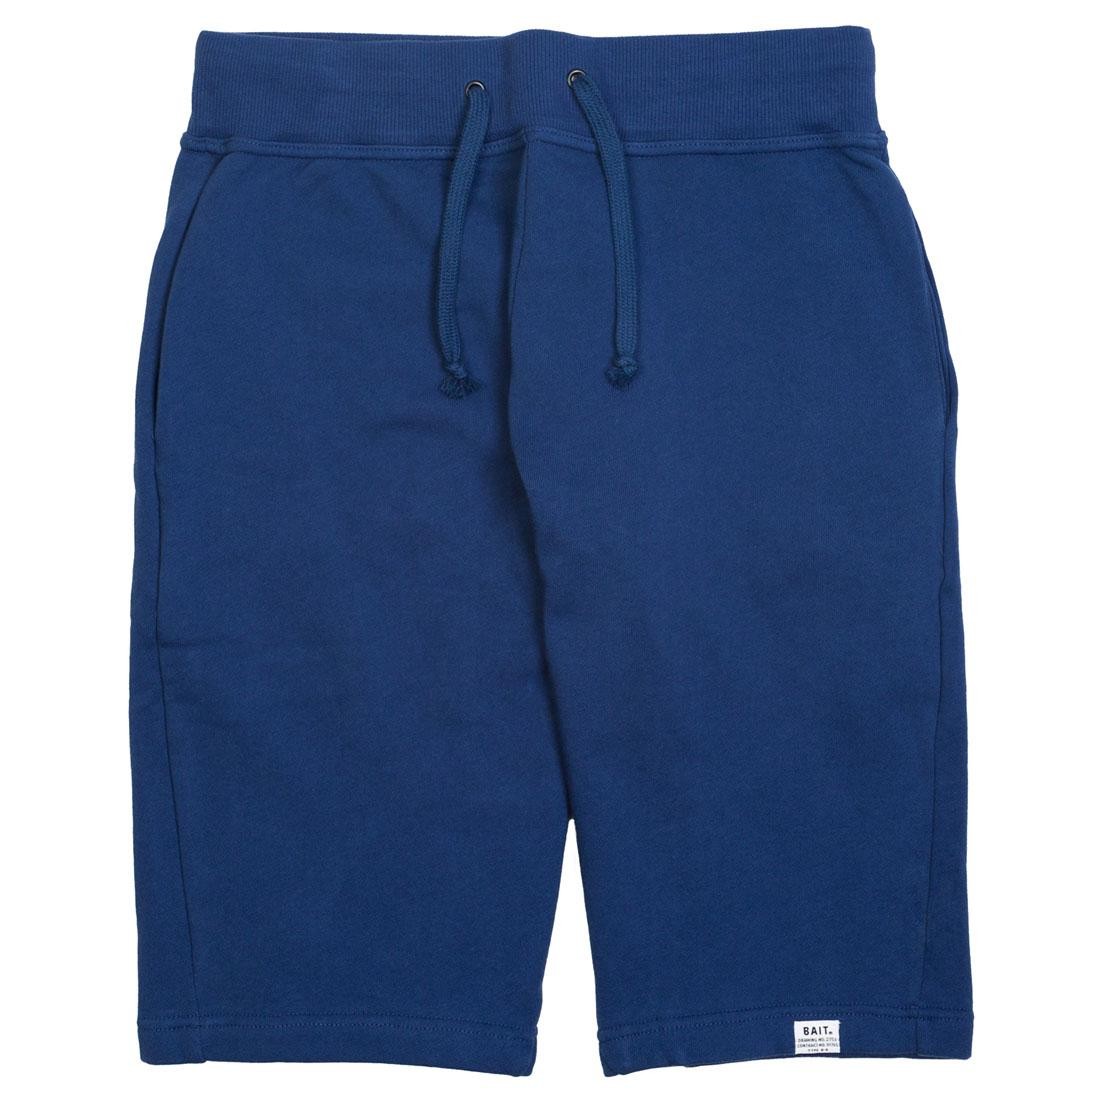 Cheap Urlfreeze Jordan Outlet Men Sweat Shorts (navy)